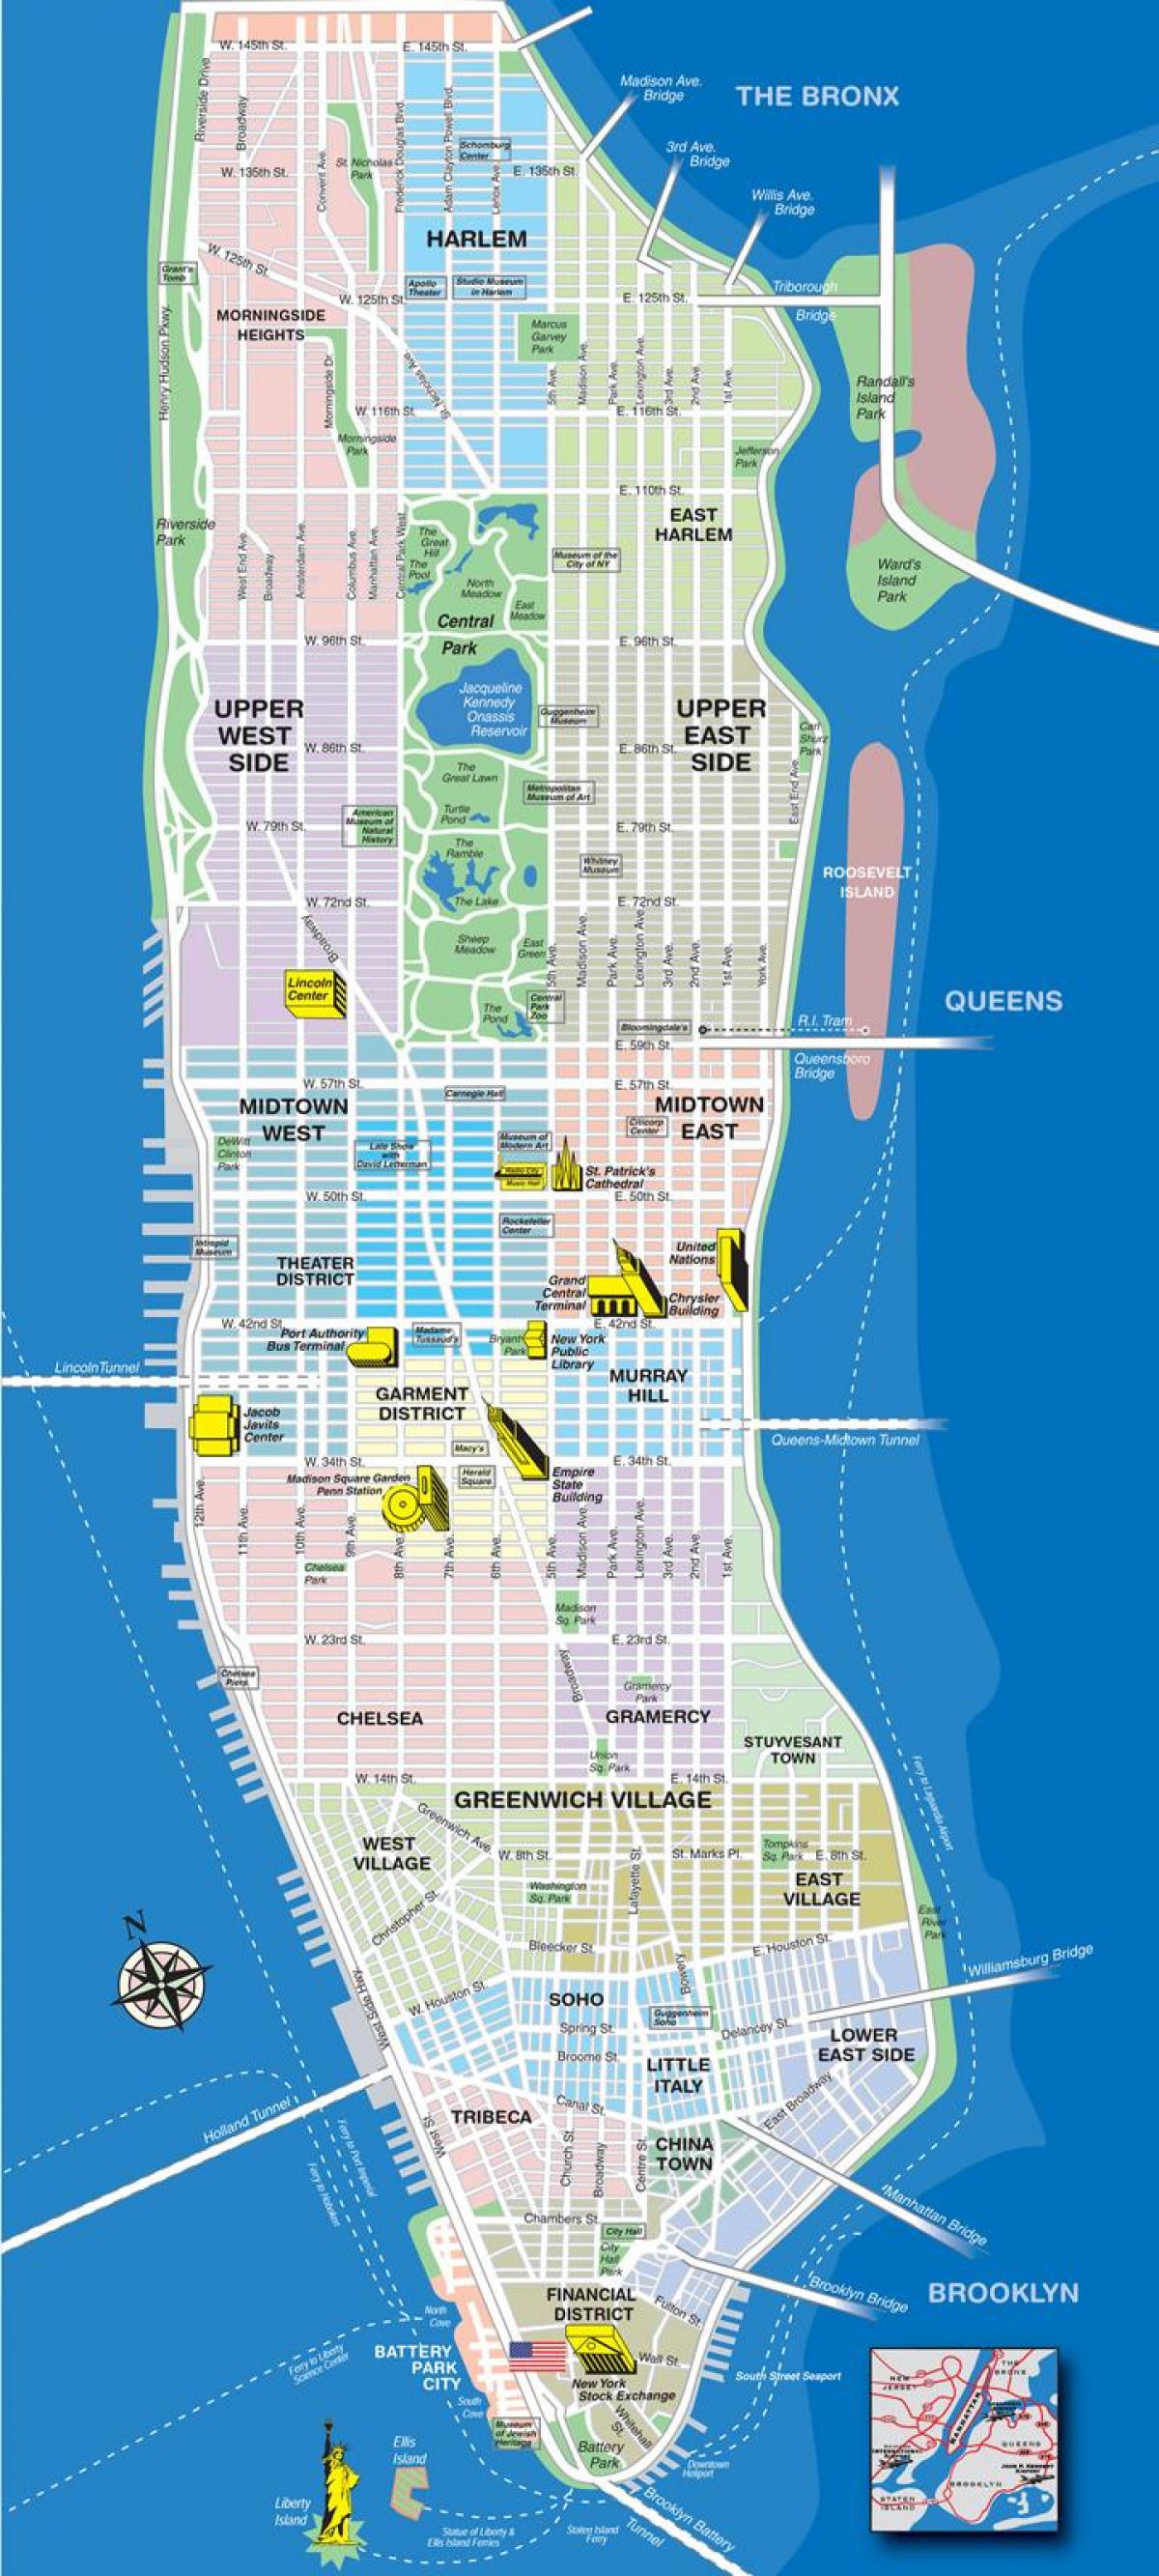 Landkarte von Avenue in Manhattan